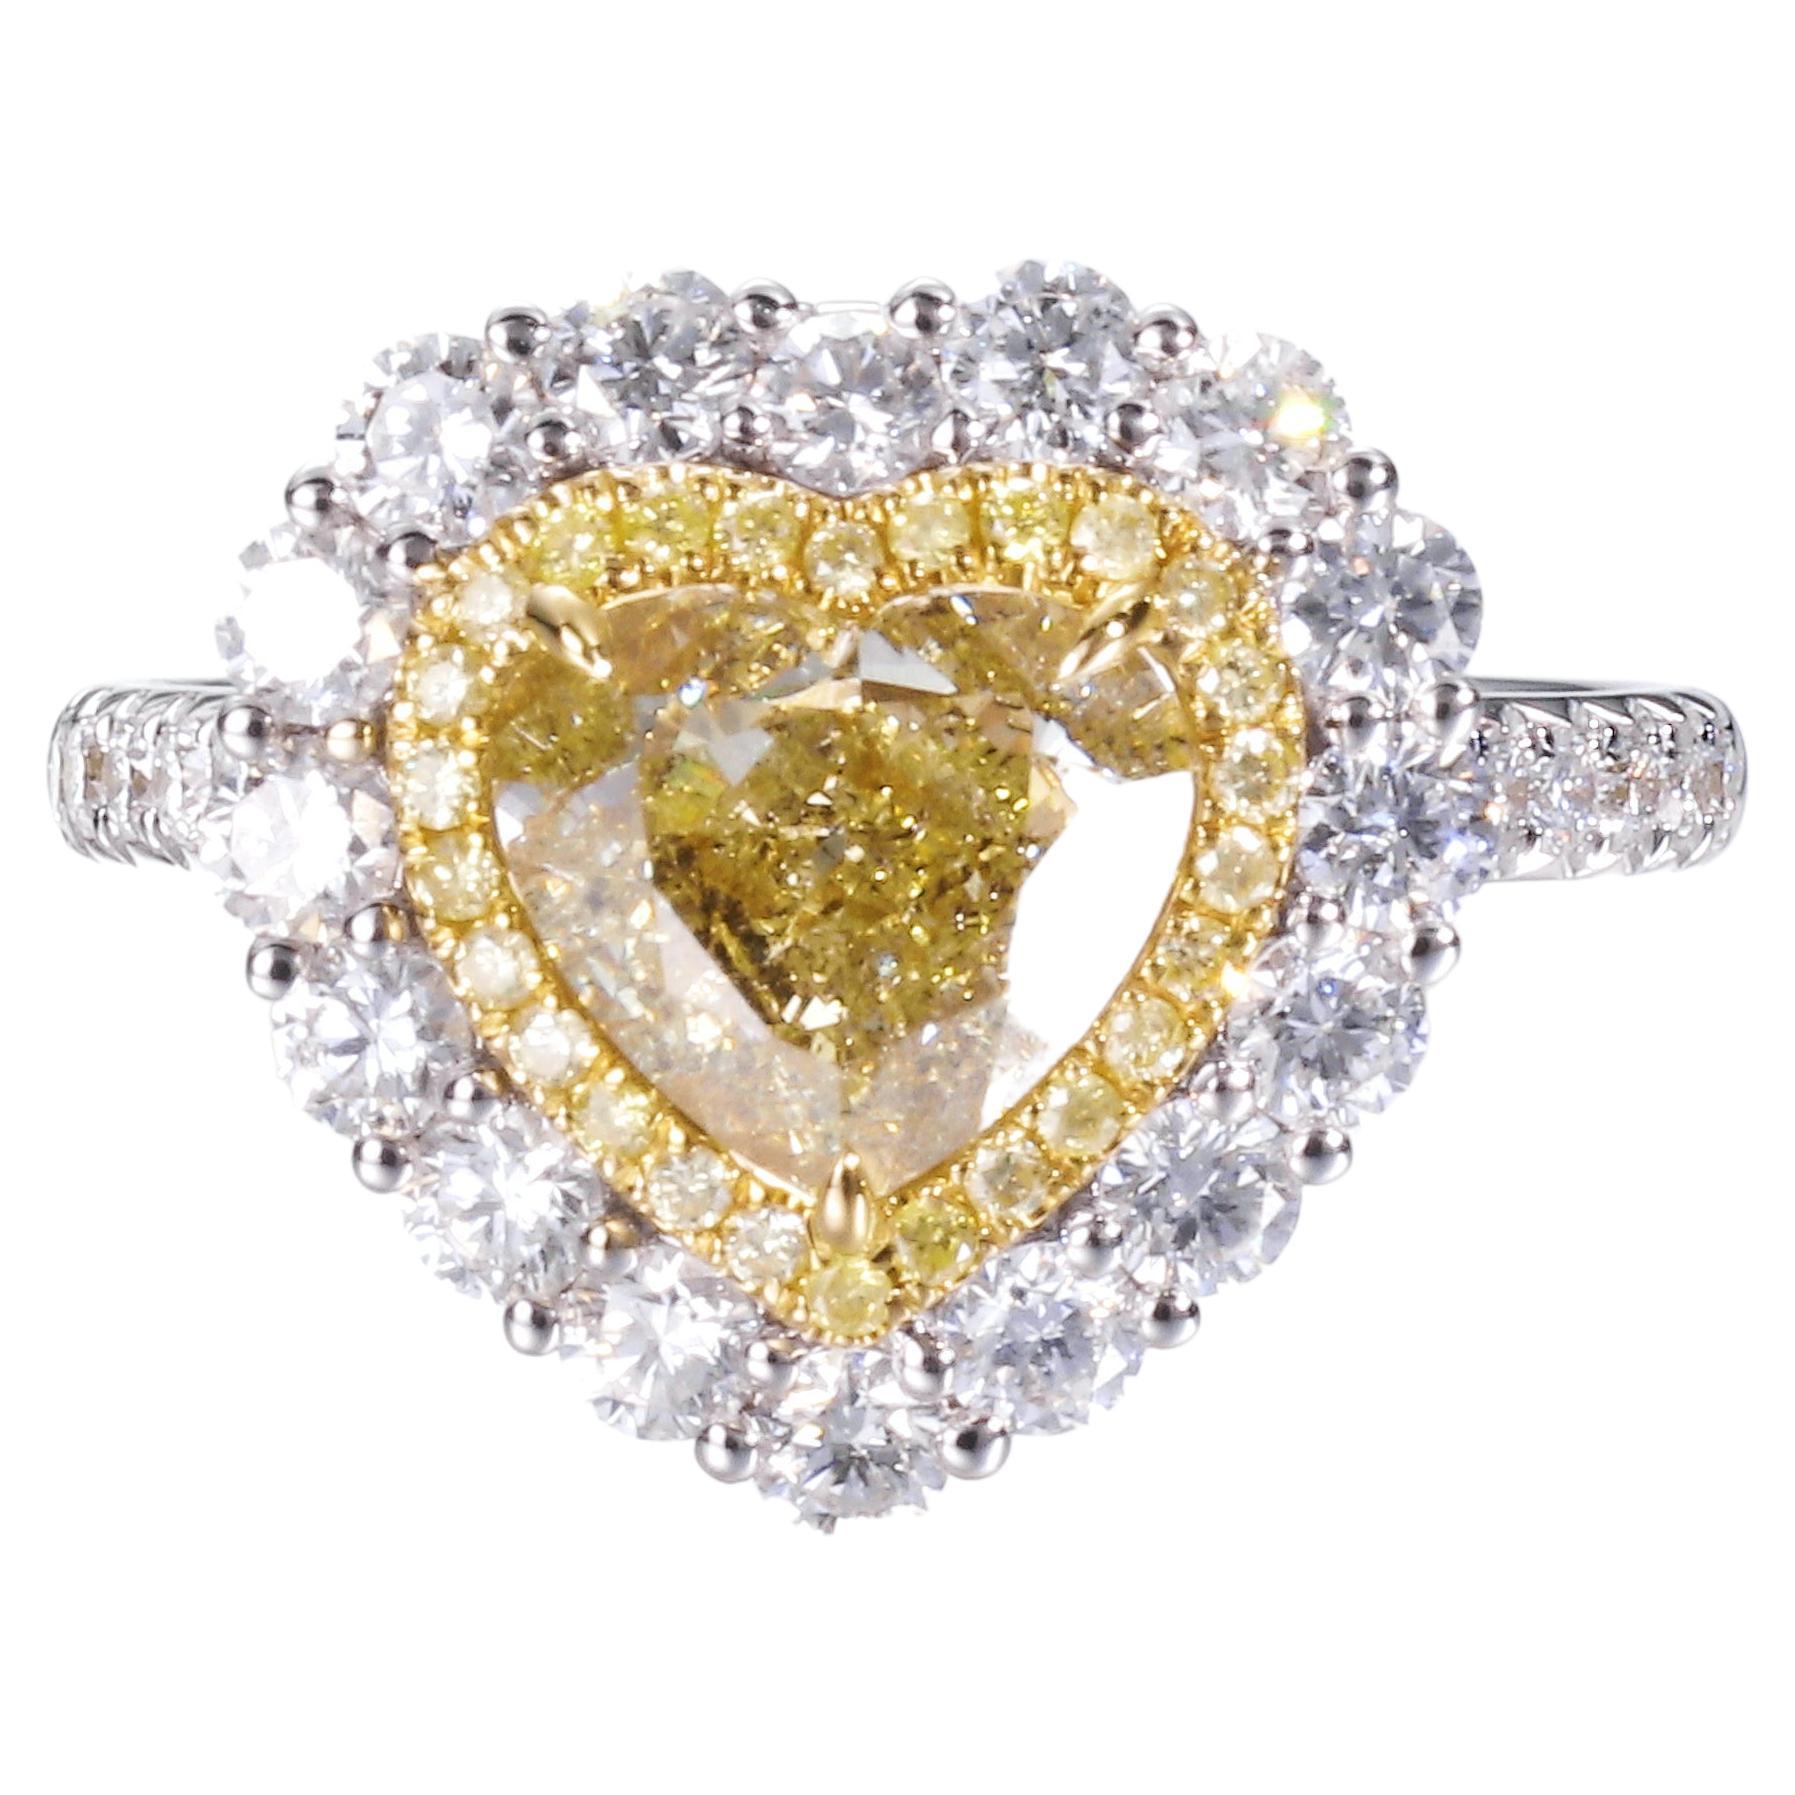 Bague en diamant certifié GIA, 2,01 carats, de couleur naturelle jaune vert brunâtre